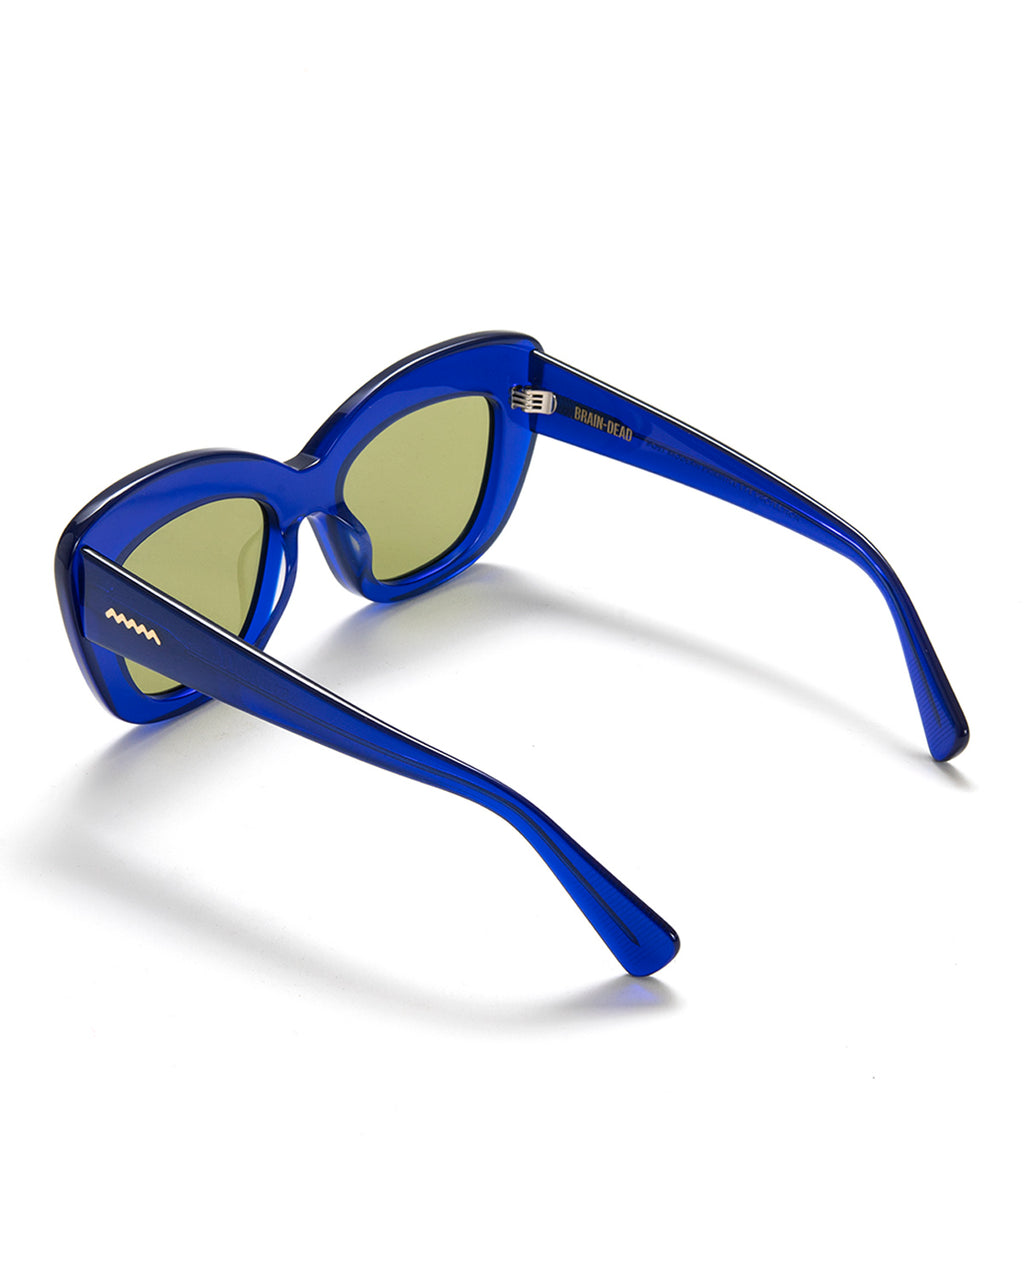 Chibi Sunglasses - Translucent Blue - Brain Dead 3